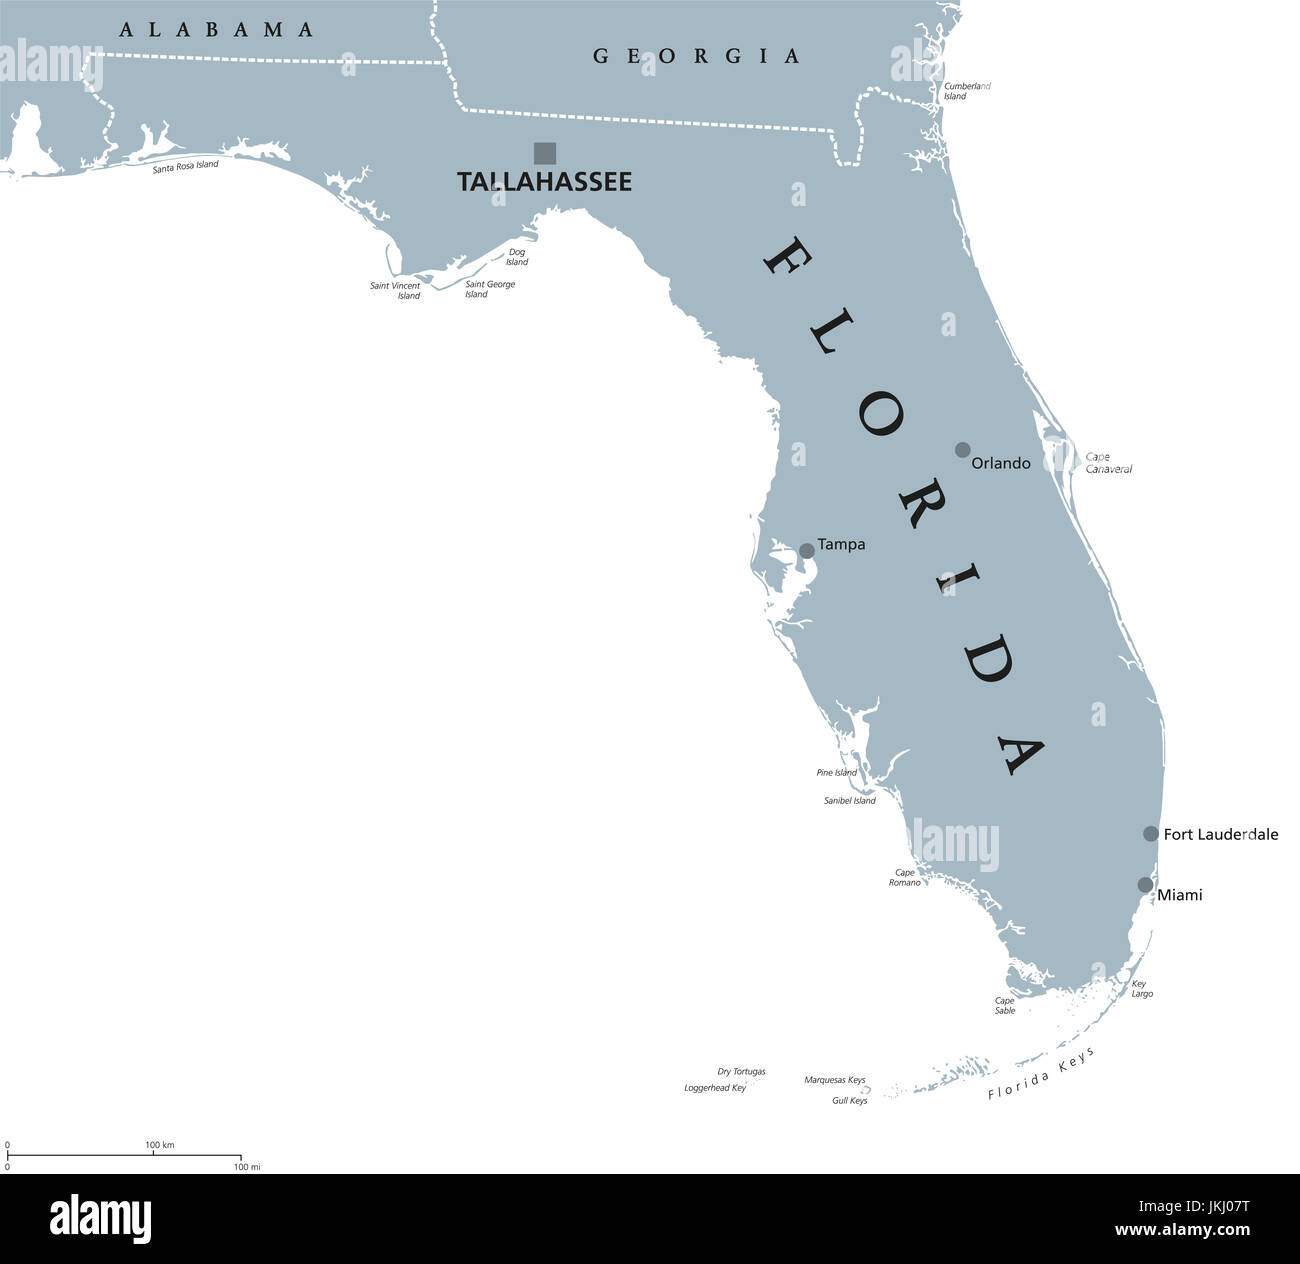 Florida mappa politico con capitale Tallahassee. Stato nella regione del sud-est degli Stati Uniti, delimitato dal golfo del Messico. Illustrazione. Foto Stock